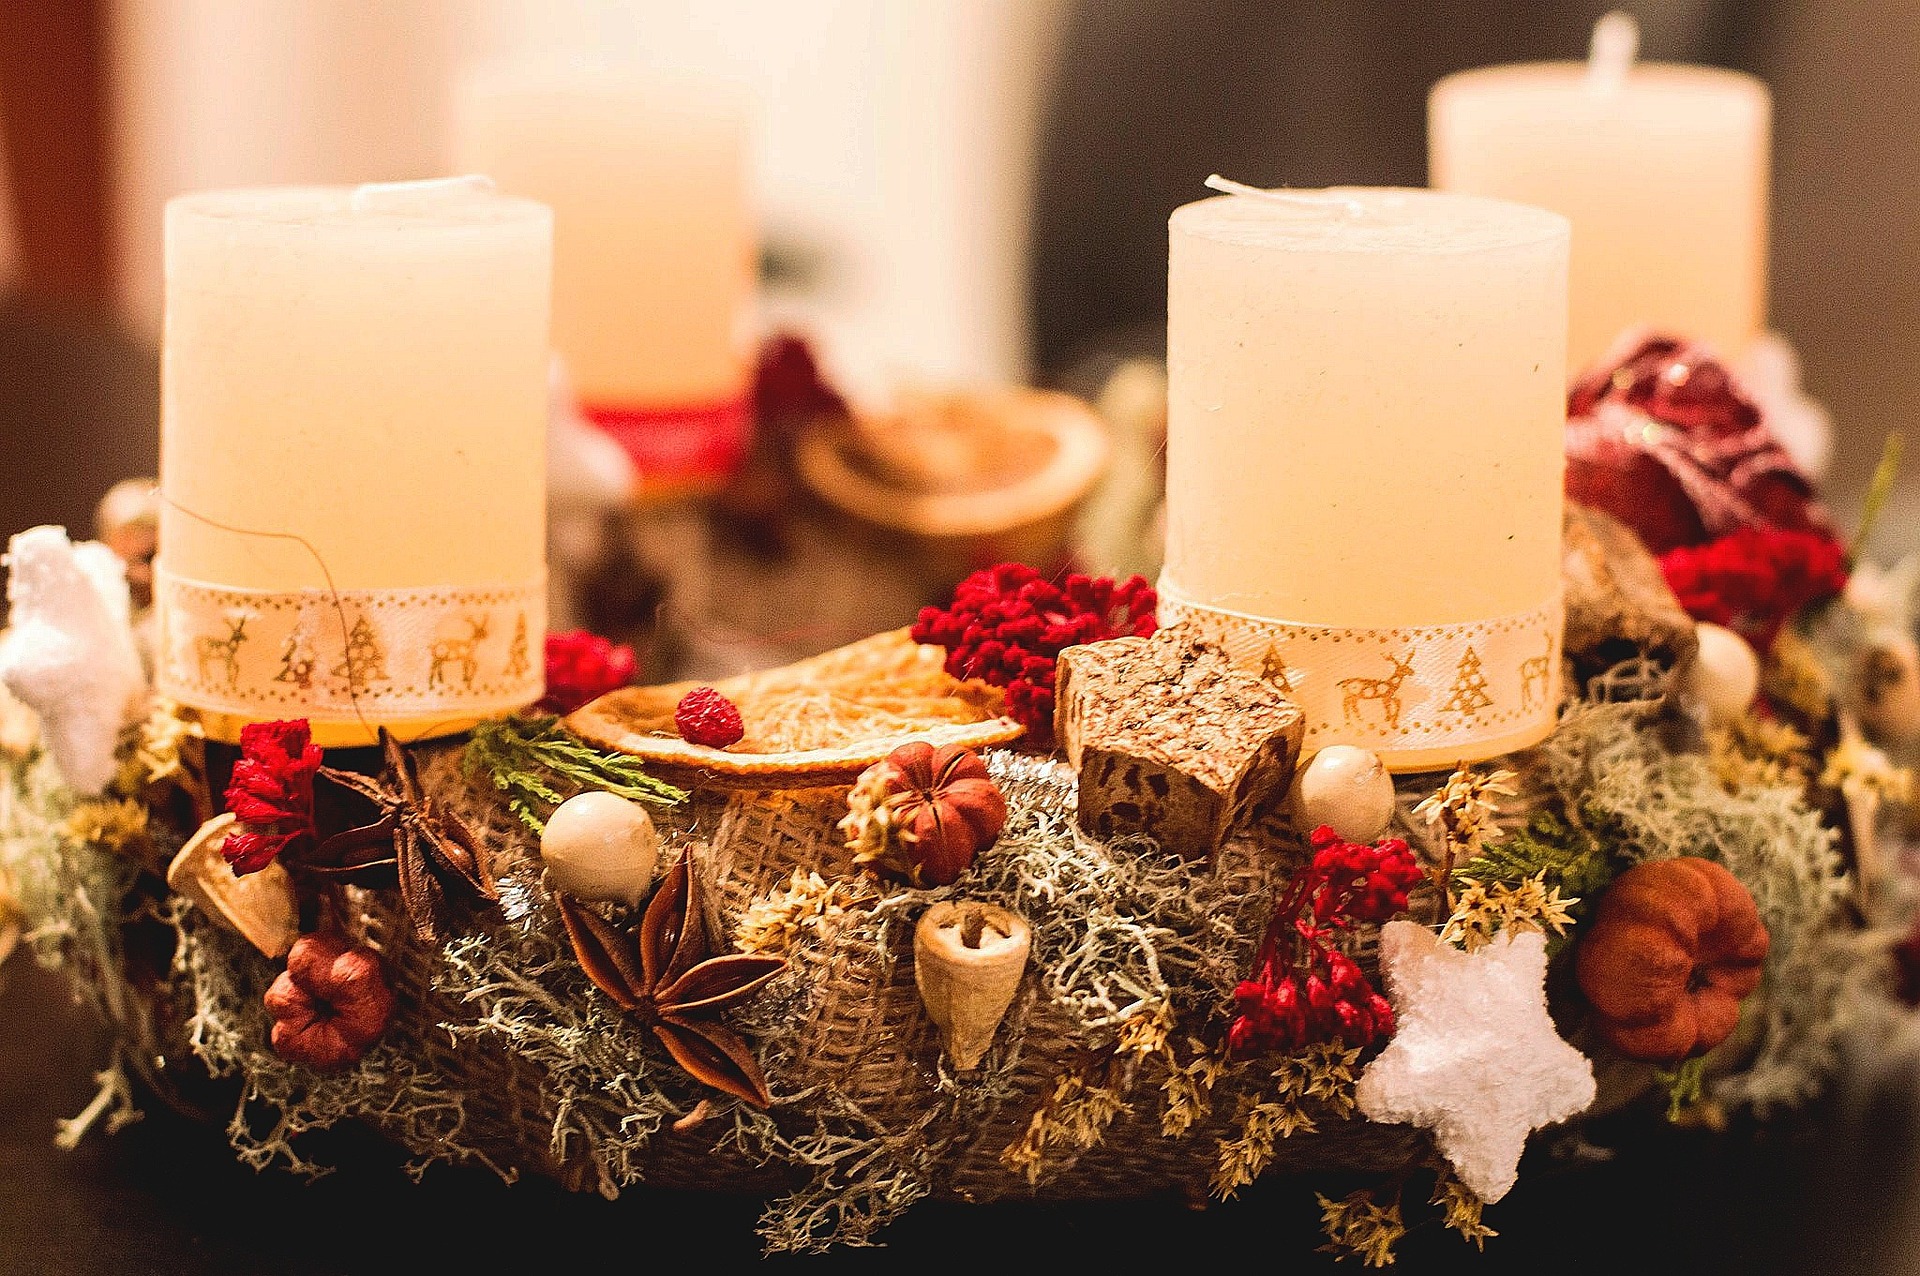 Obiceiuri și tradiții în Ajunul Crăciunului. Ce se pune pe masa de Crăciun